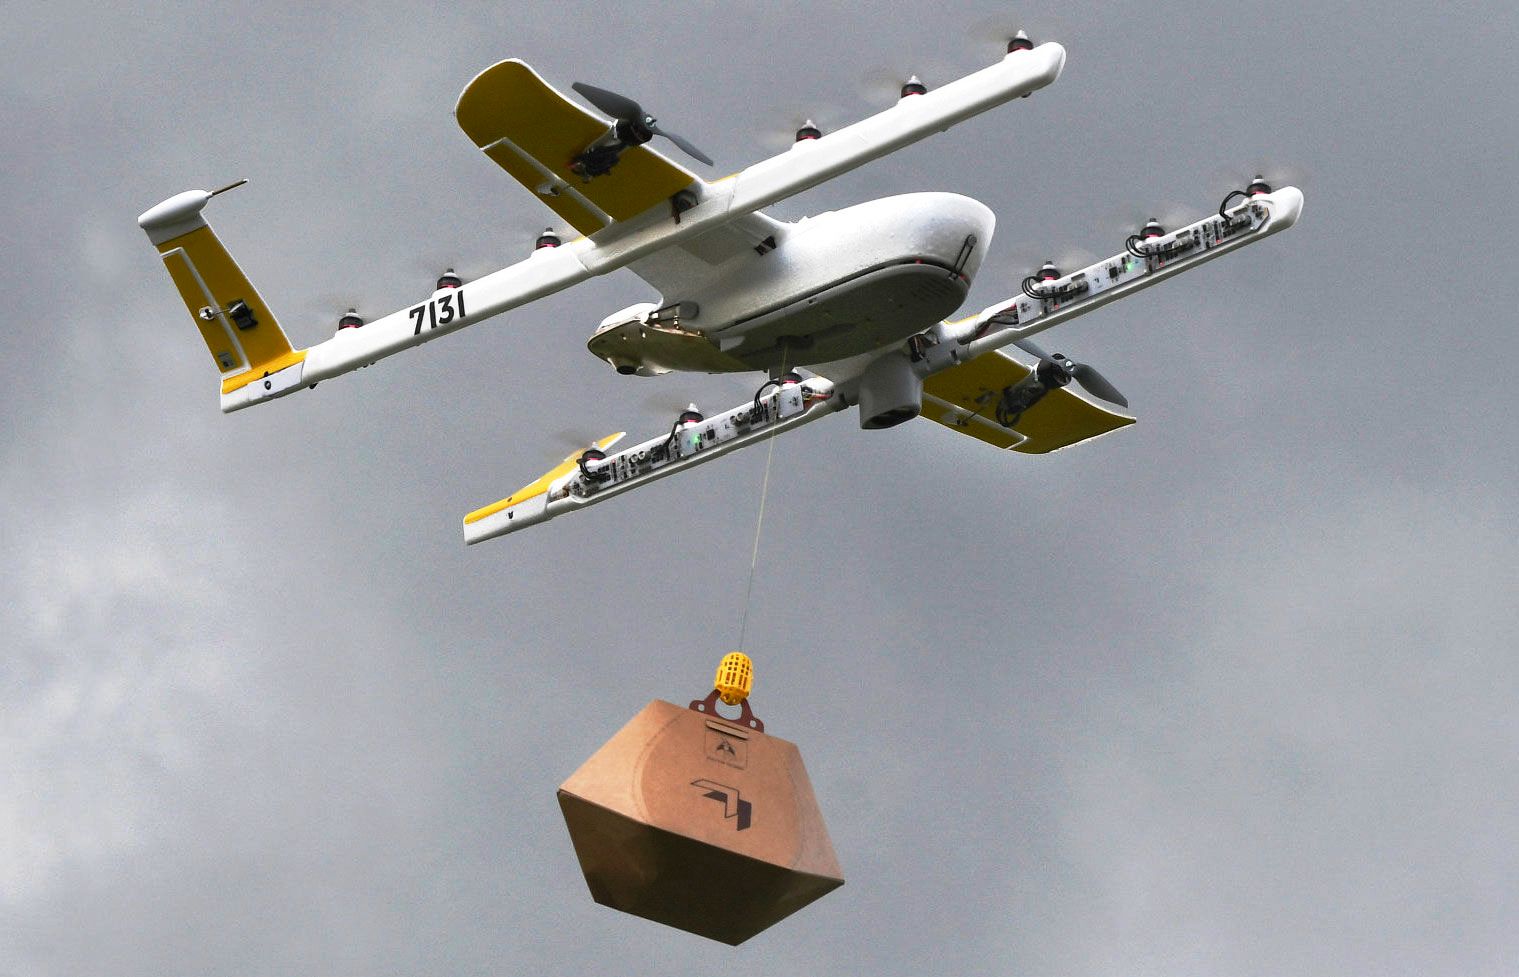 Küçük Paket Teslimatlarında “Drone” Kullanımı Yaygınlaşacak